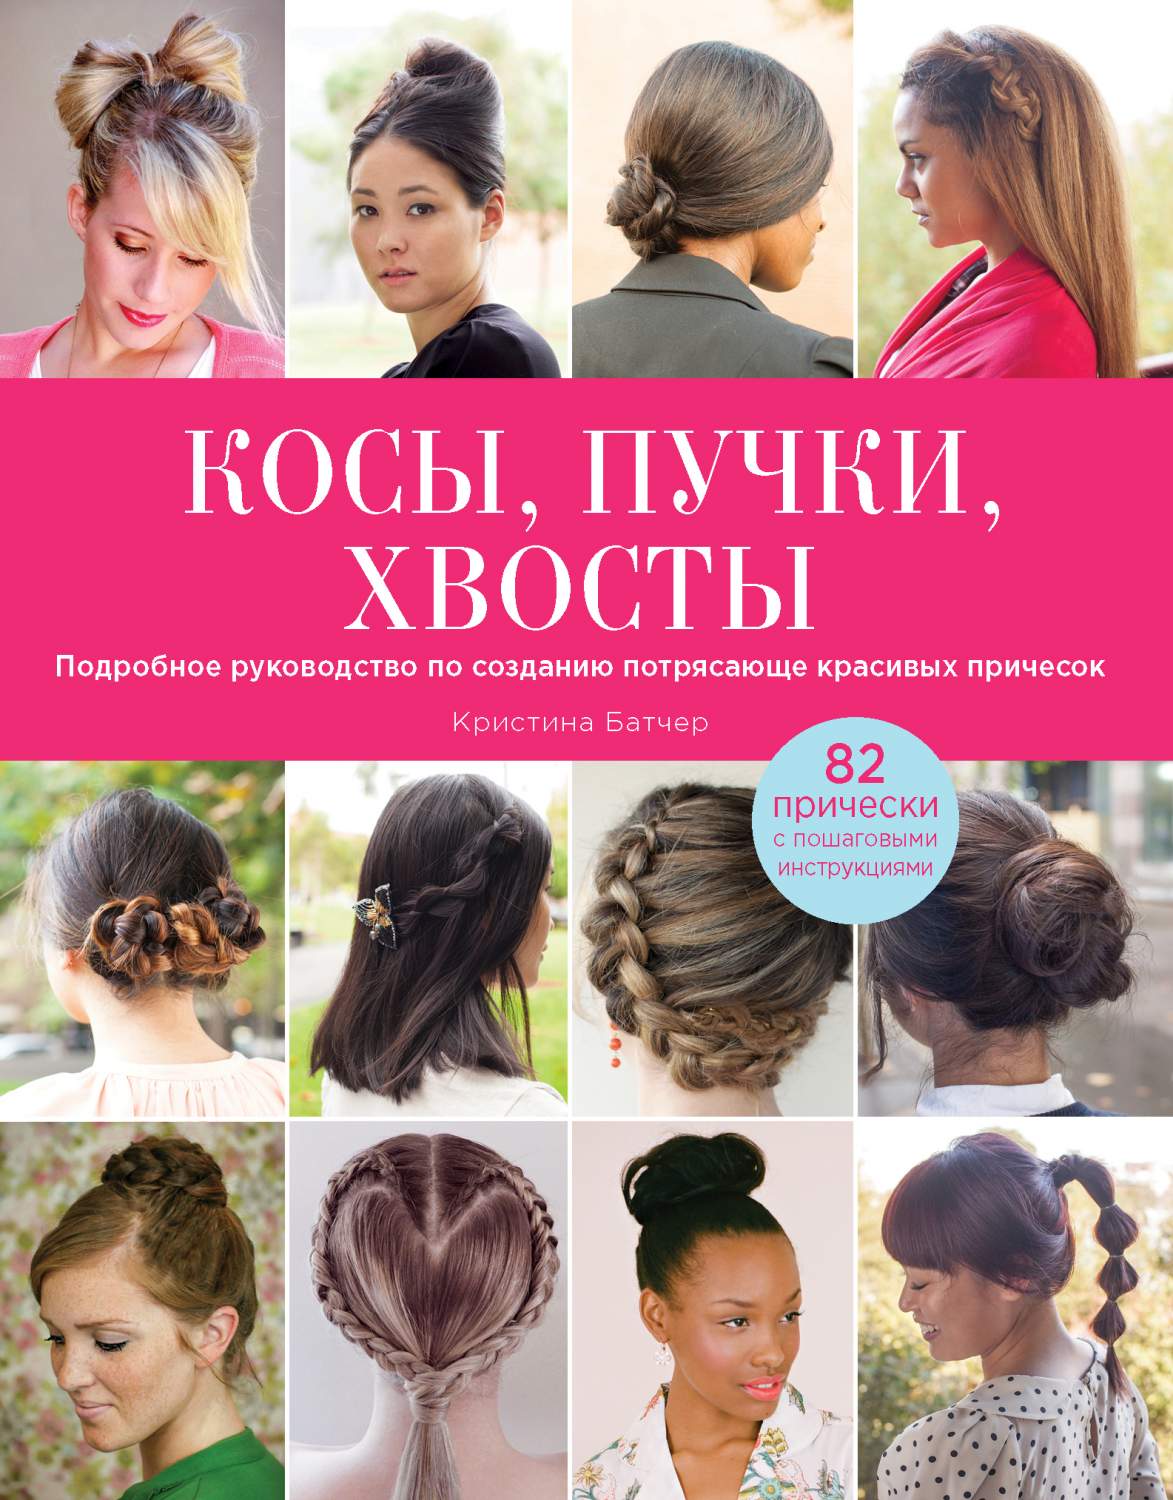 Причёски для девочек — отзывы о мастерах в Москве